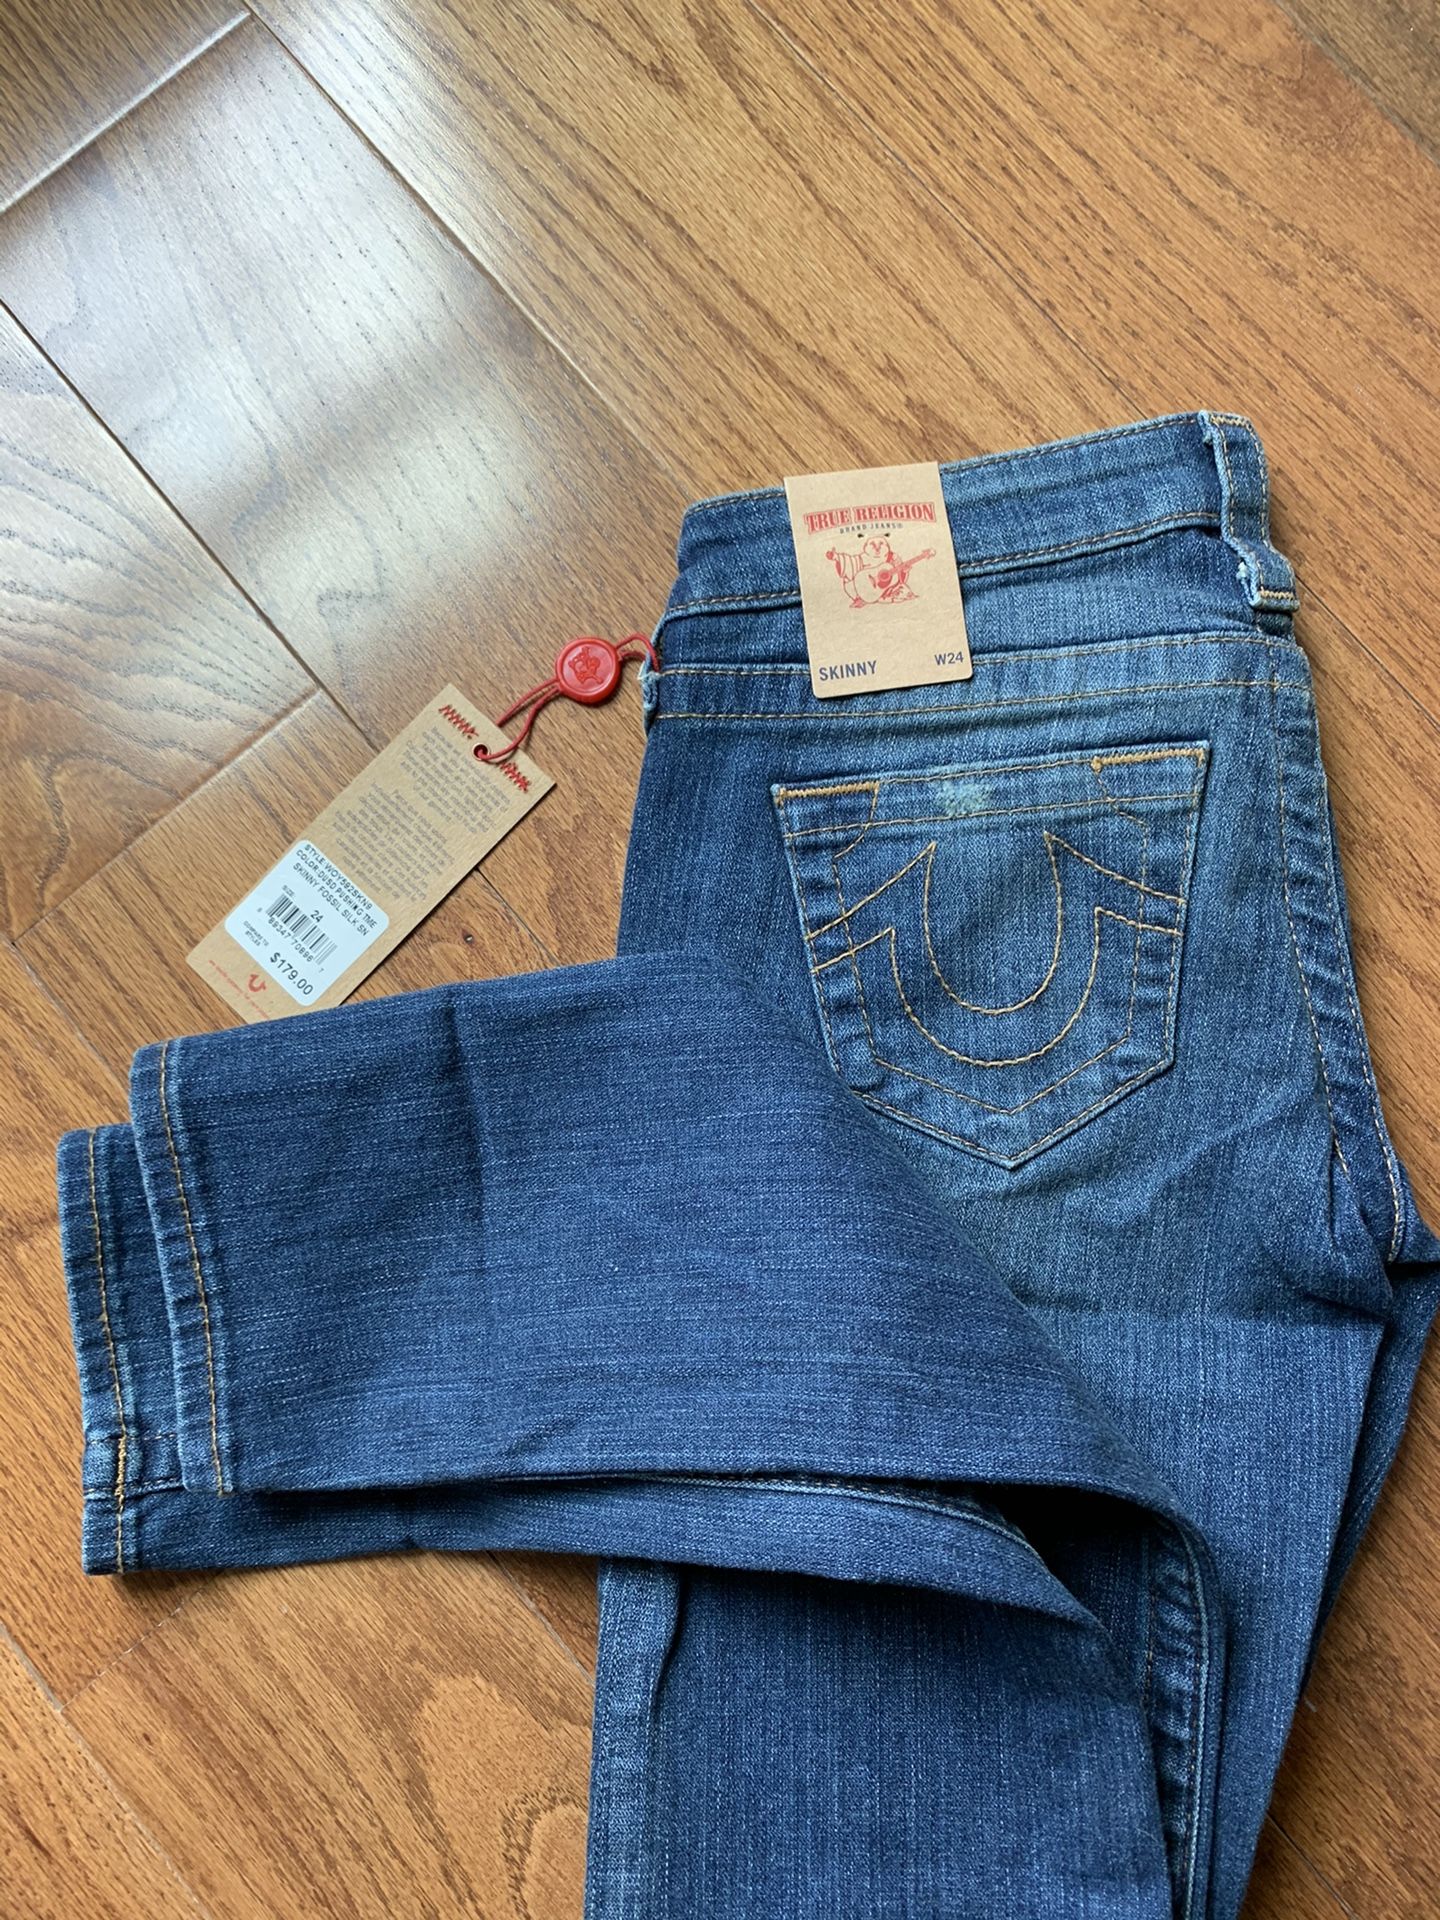 New True Religion skinny jeans size 24